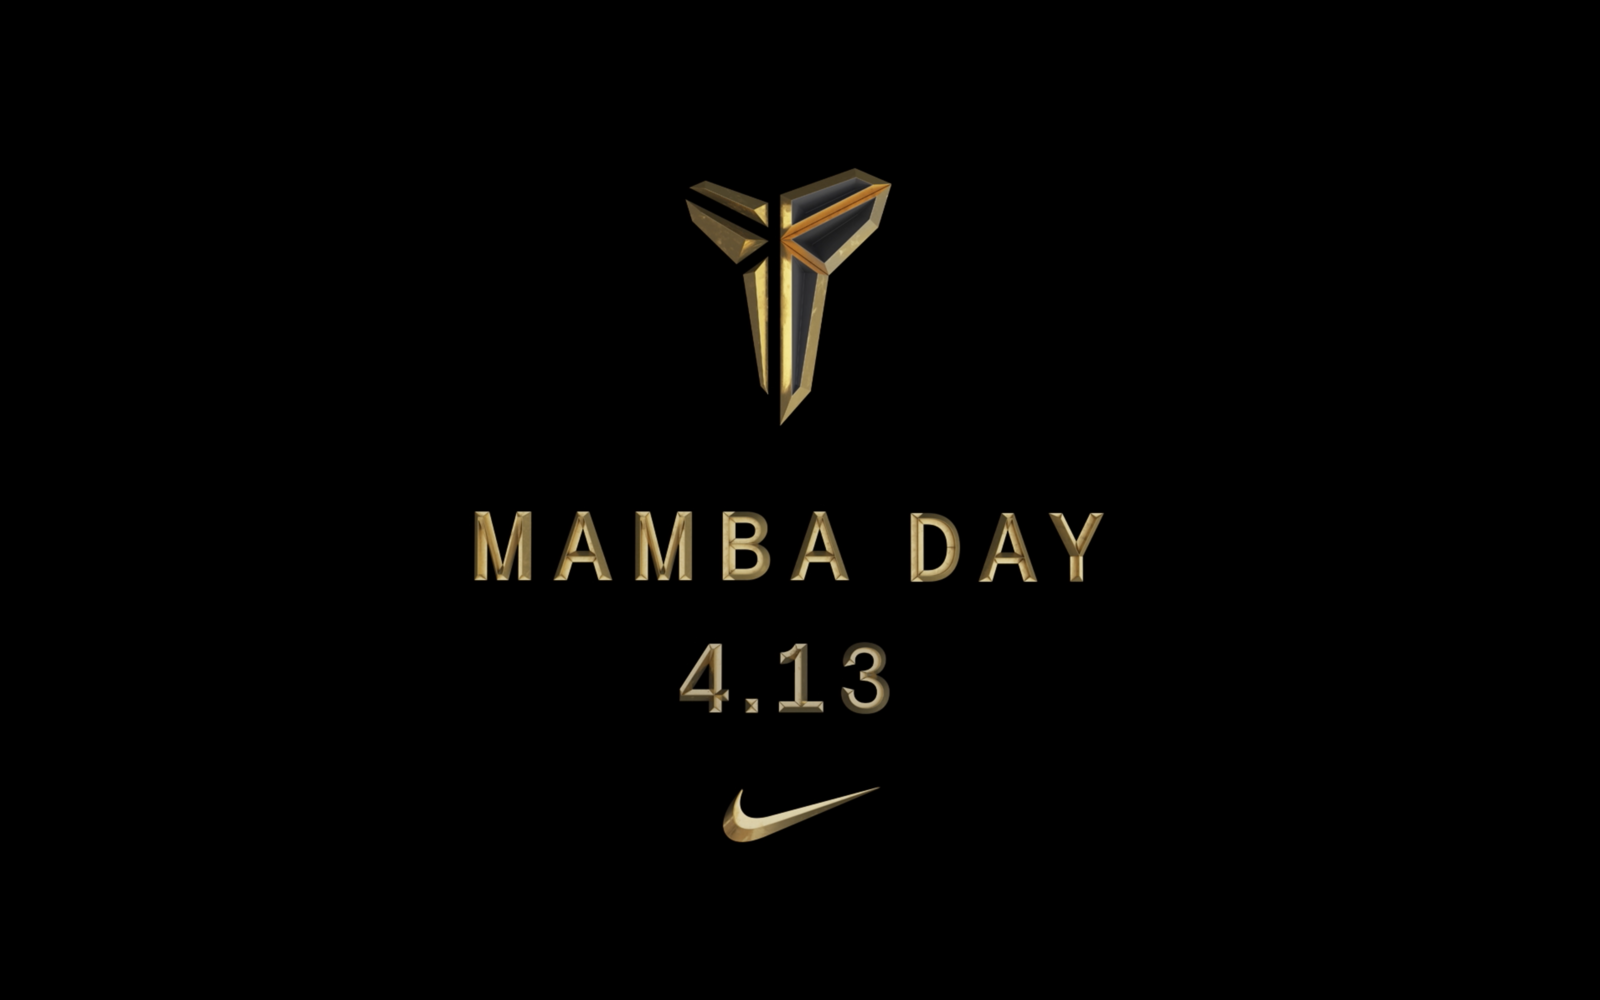 mamba day Nike 4 13 kobe bryant